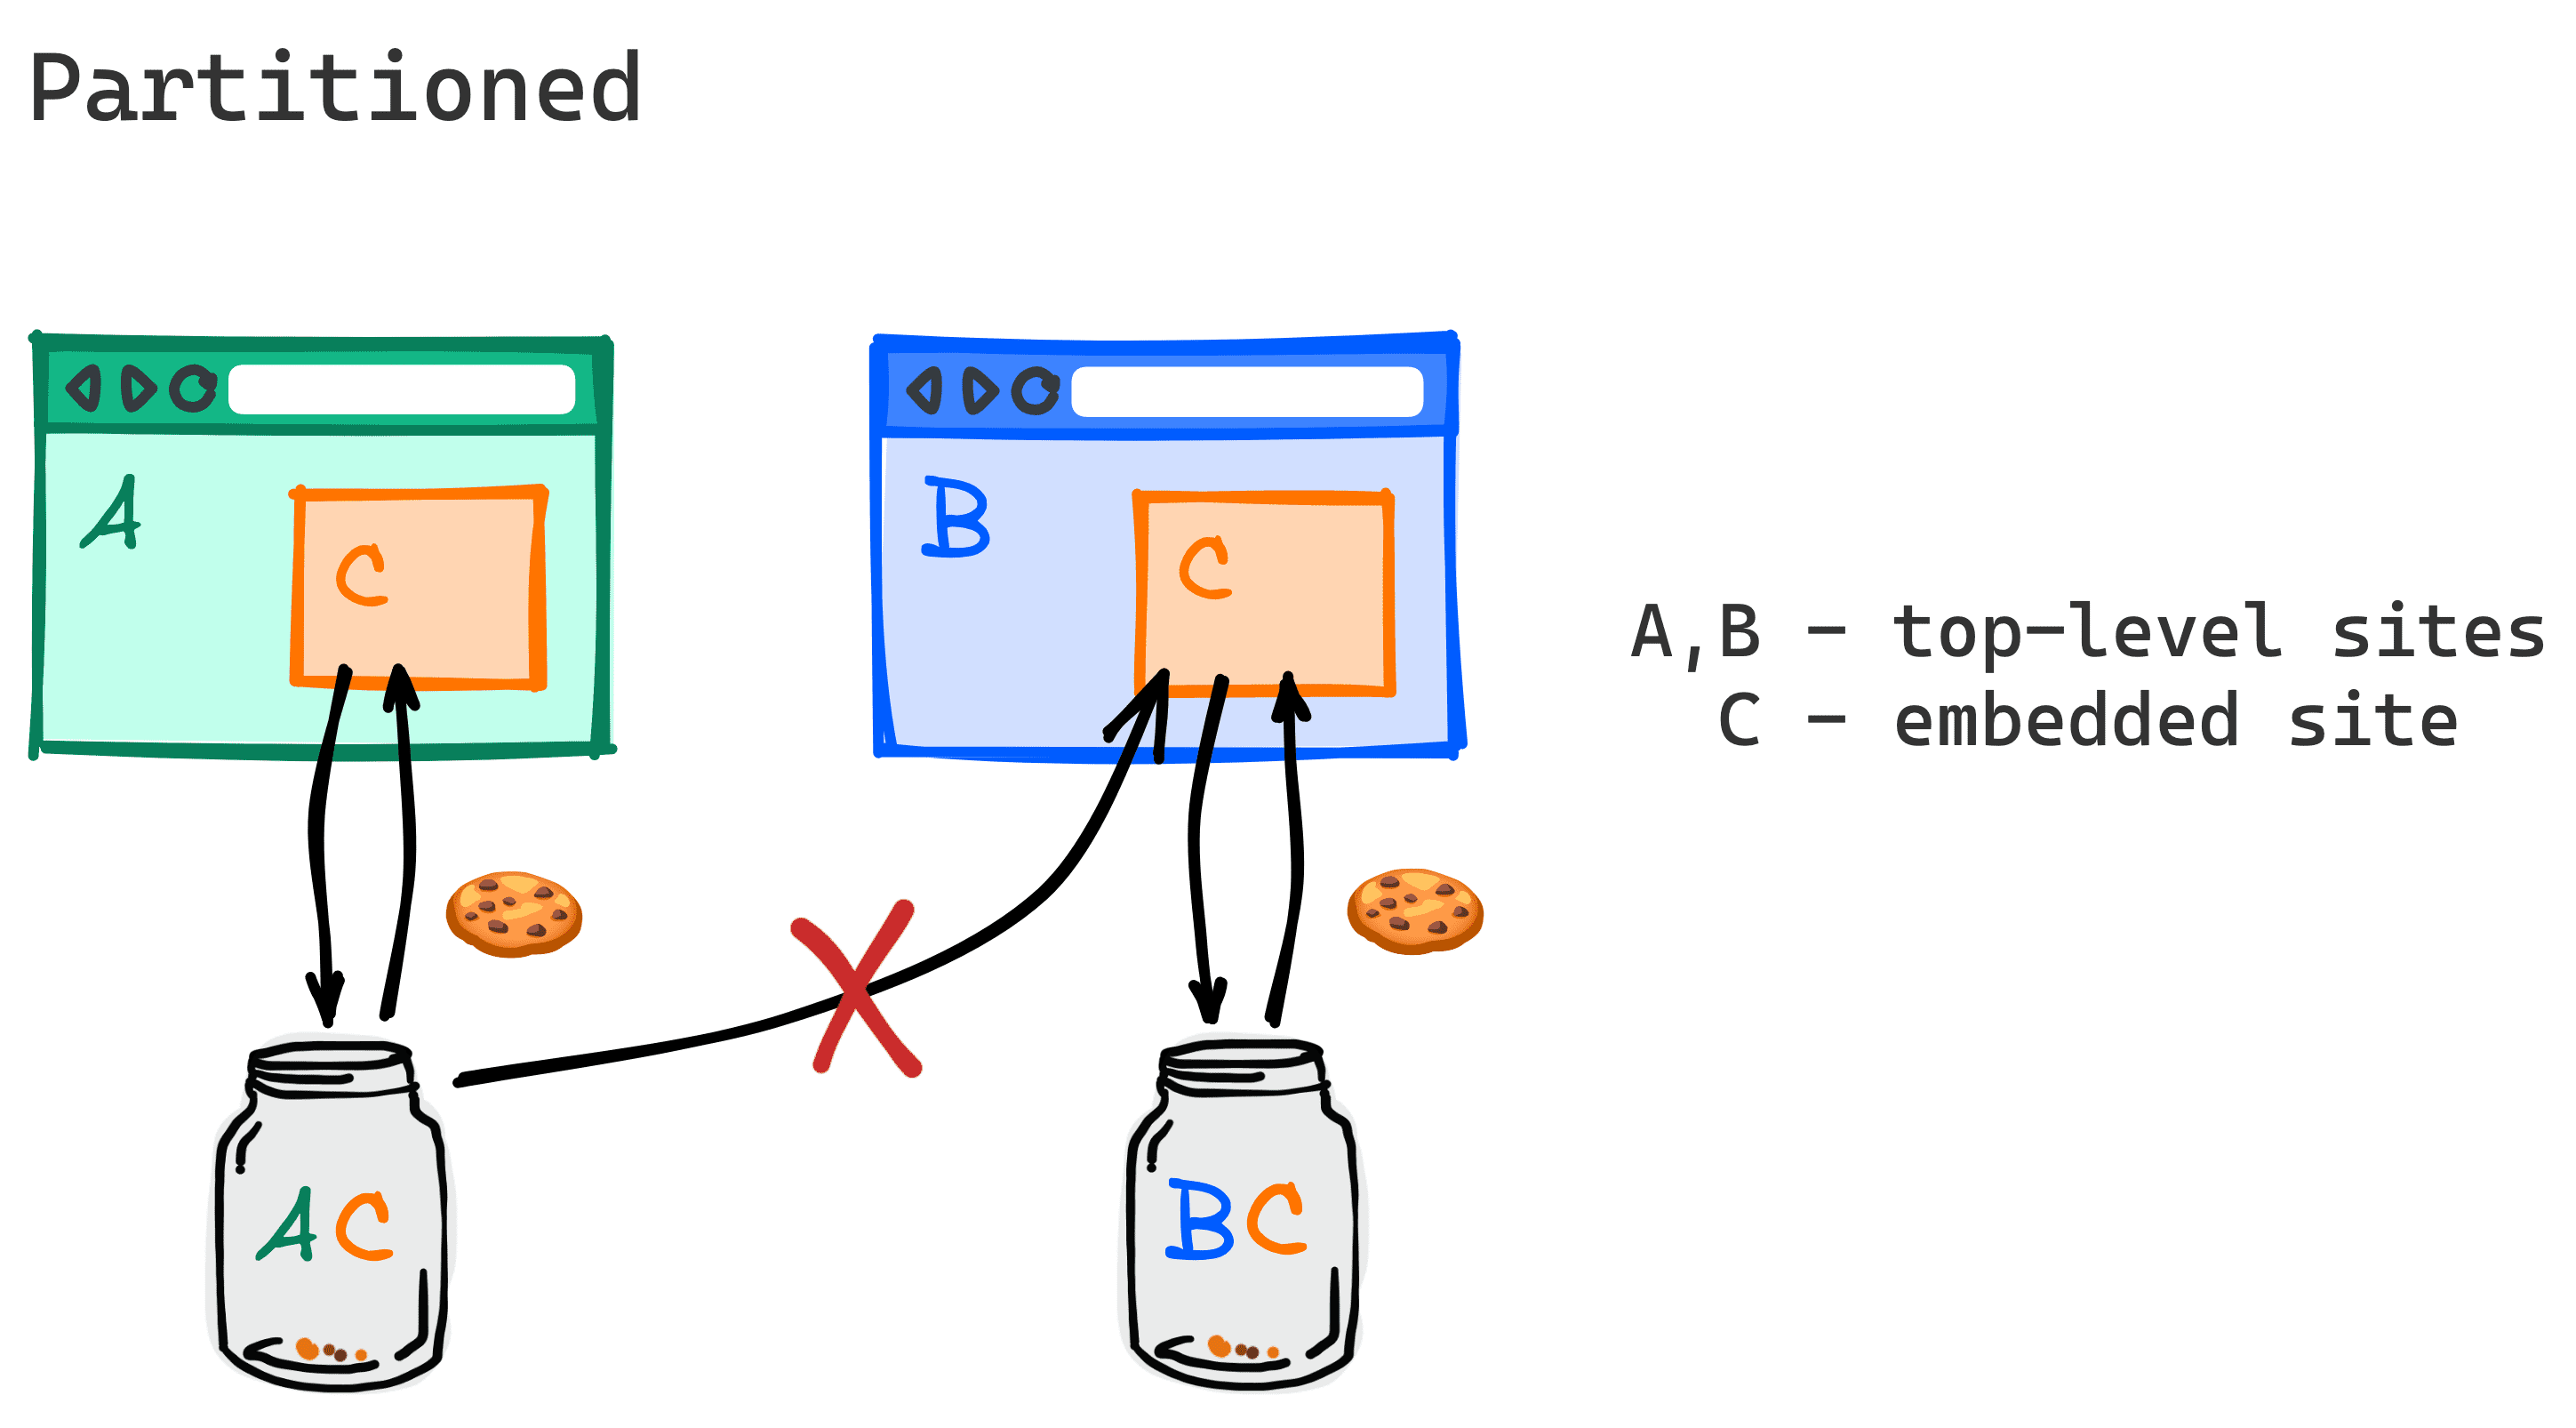 공통의 서드 파티를 삽입한 두 개의 서로 다른 웹사이트가 해당 서드 파티의 쿠키를 더 이상 공유하지 않음을 보여주는 다이어그램